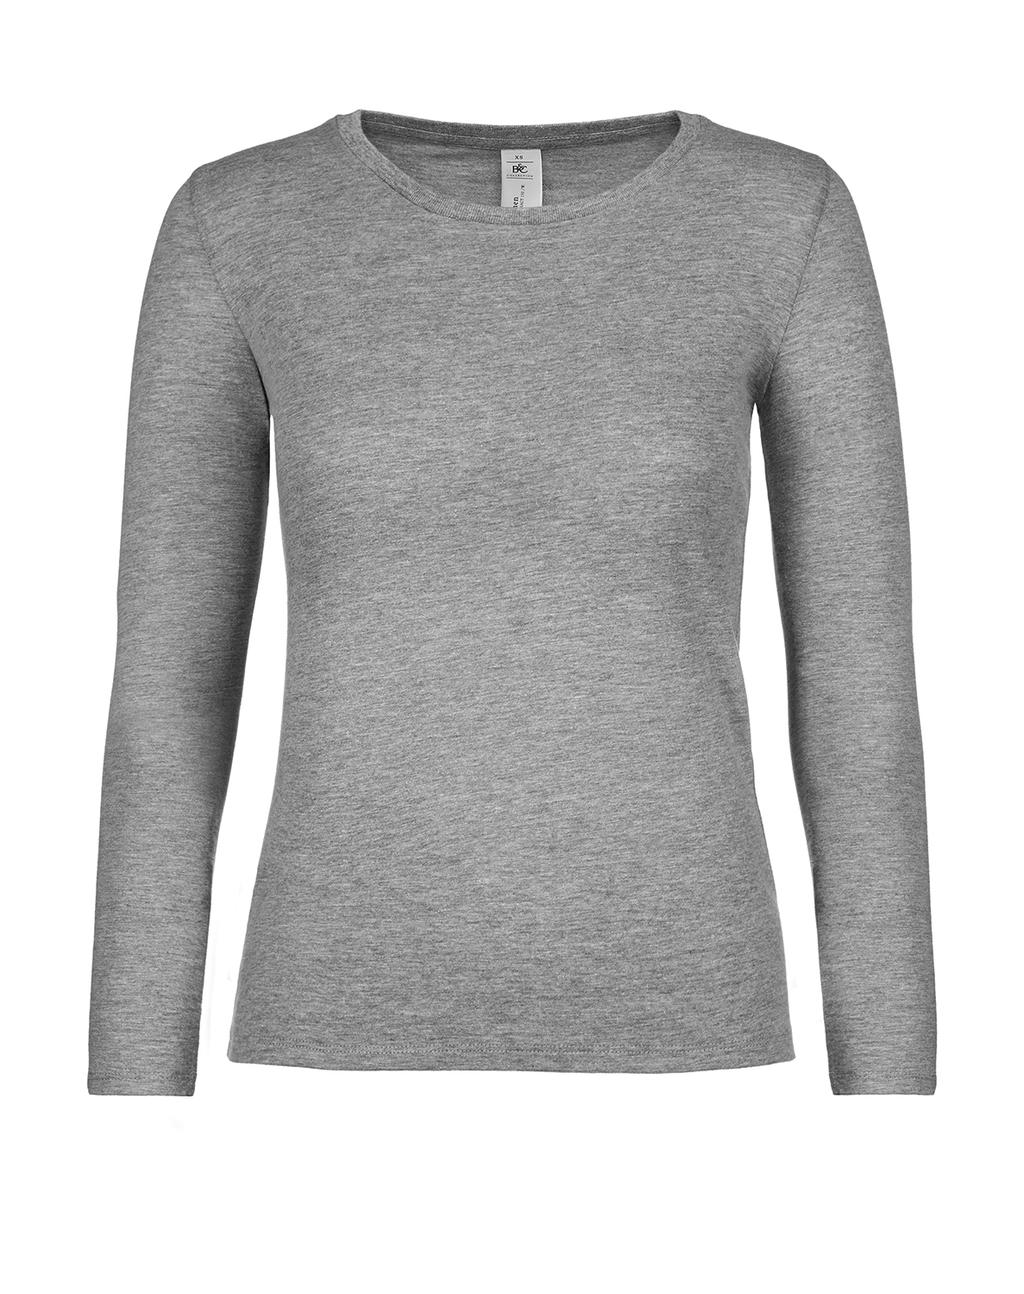 Dámske tričko s dlhými rukávmi #E150 - sport grey